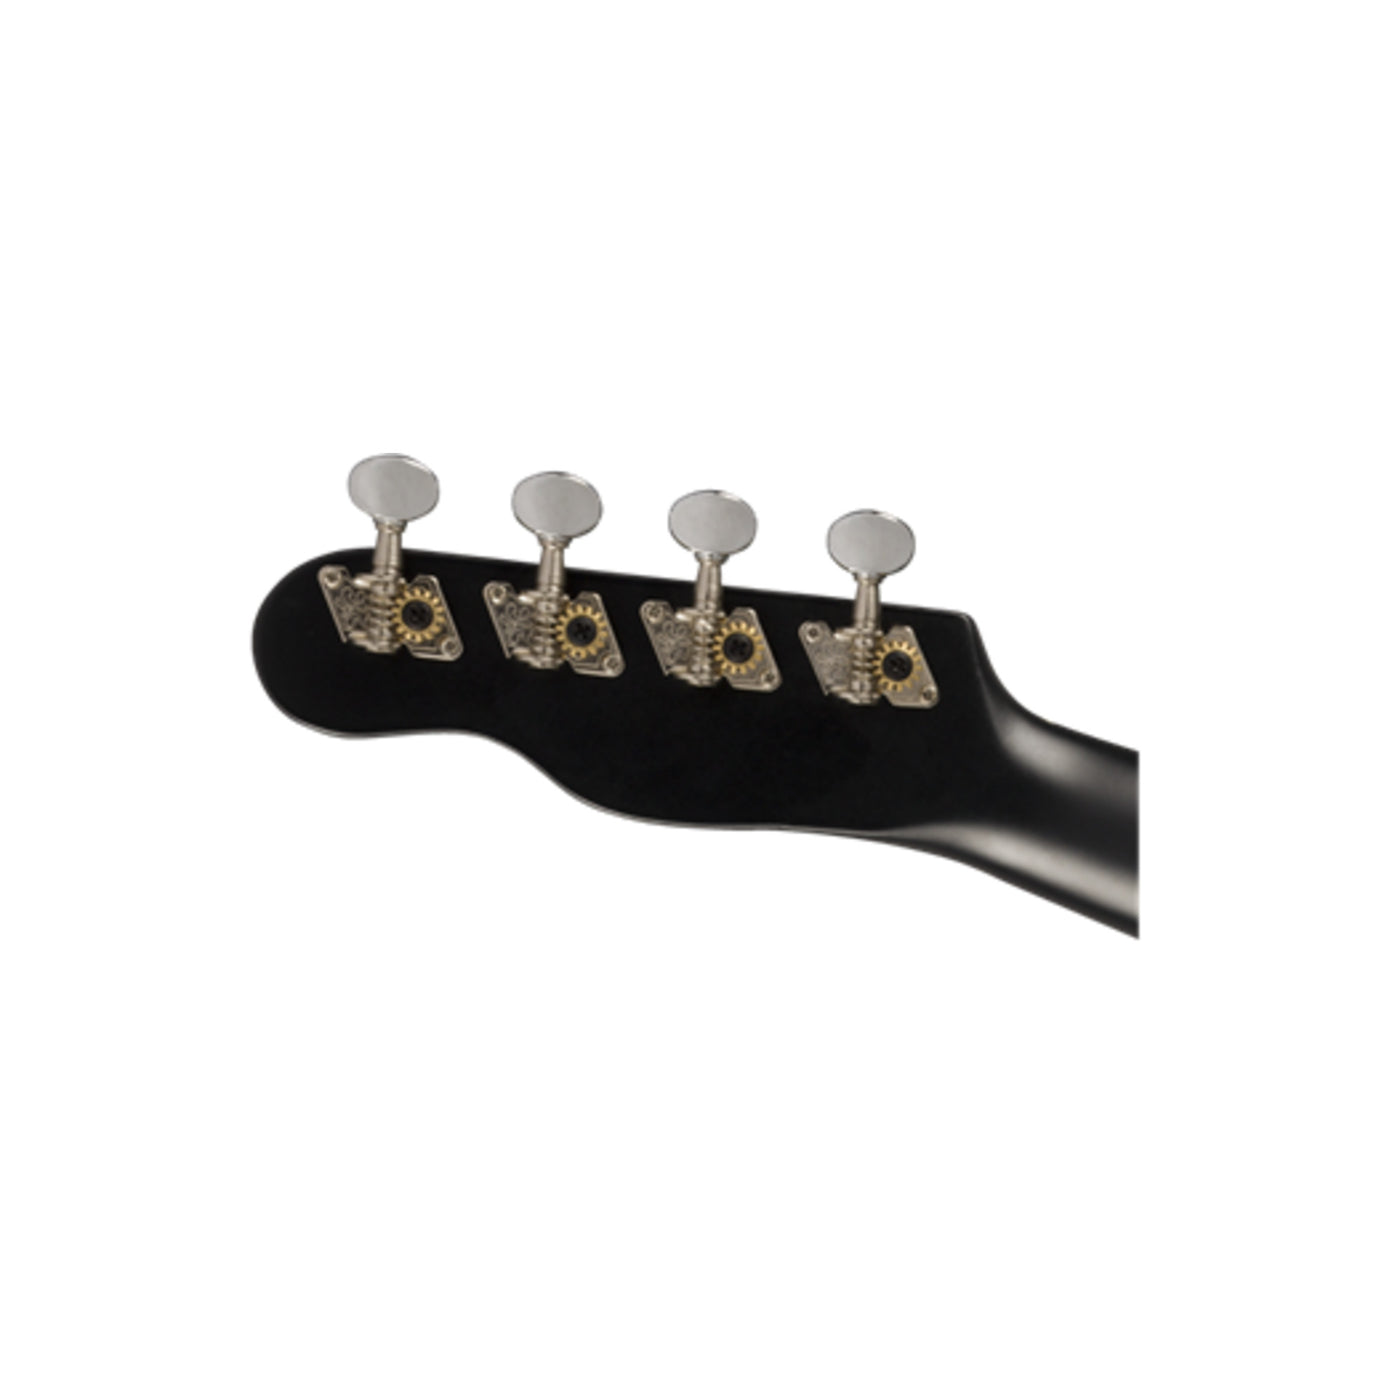 Fender Venice Soprano Ukulele, Black (0971610706)